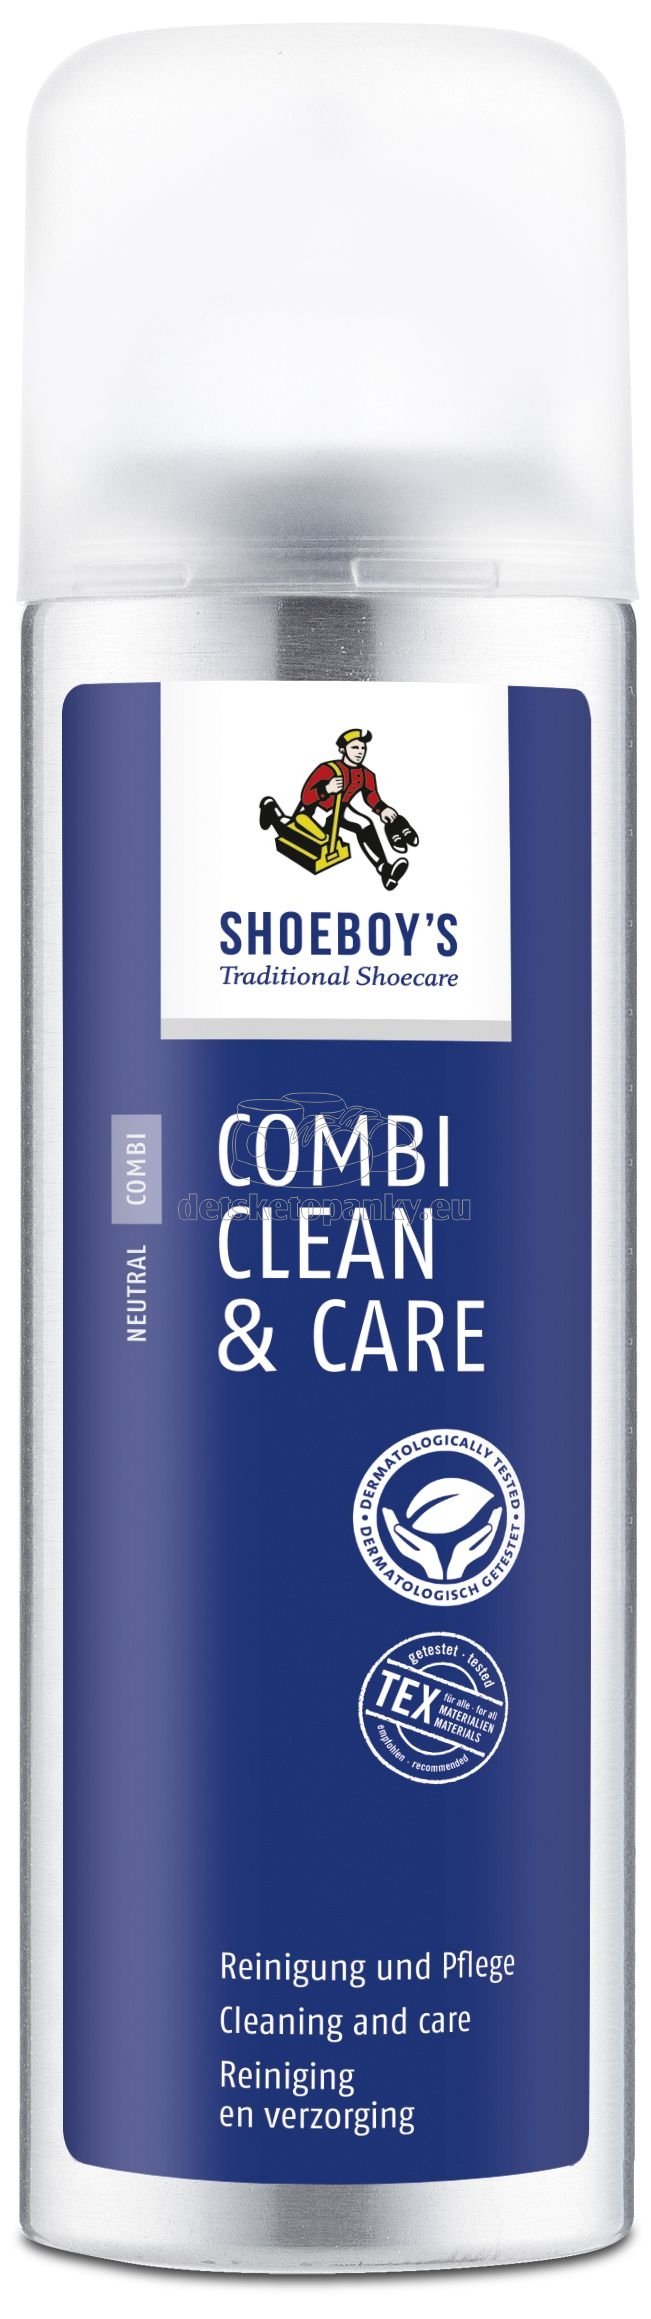 Shoeboy's COMBI CLEAN & CARE 200ml